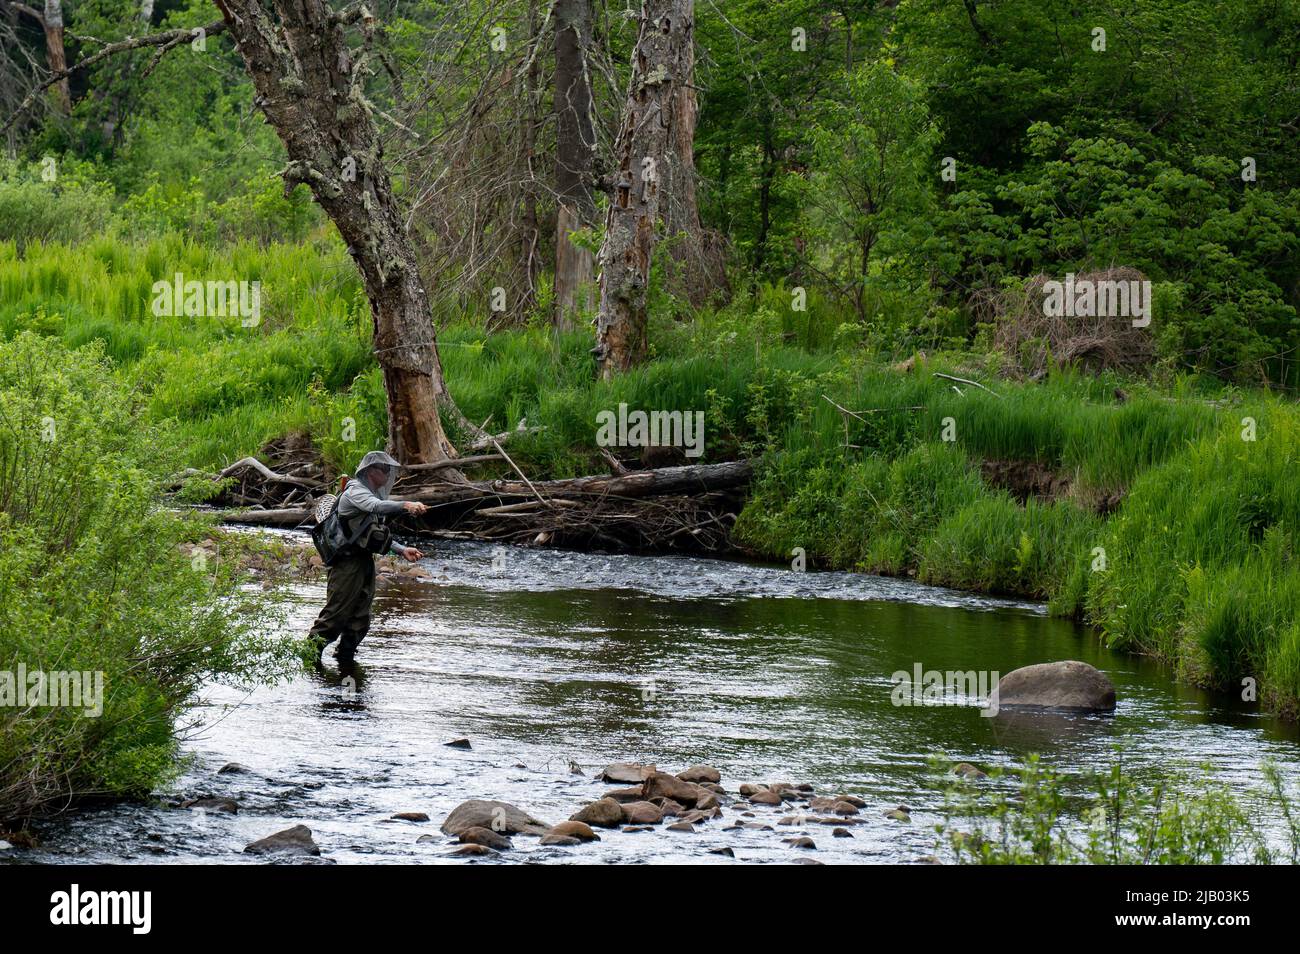 Una persona que pesca con mosca lanzando una mosca en un arroyo pequeño en el desierto de las Montañas Adirondack, NY, Estados Unidos Foto de stock